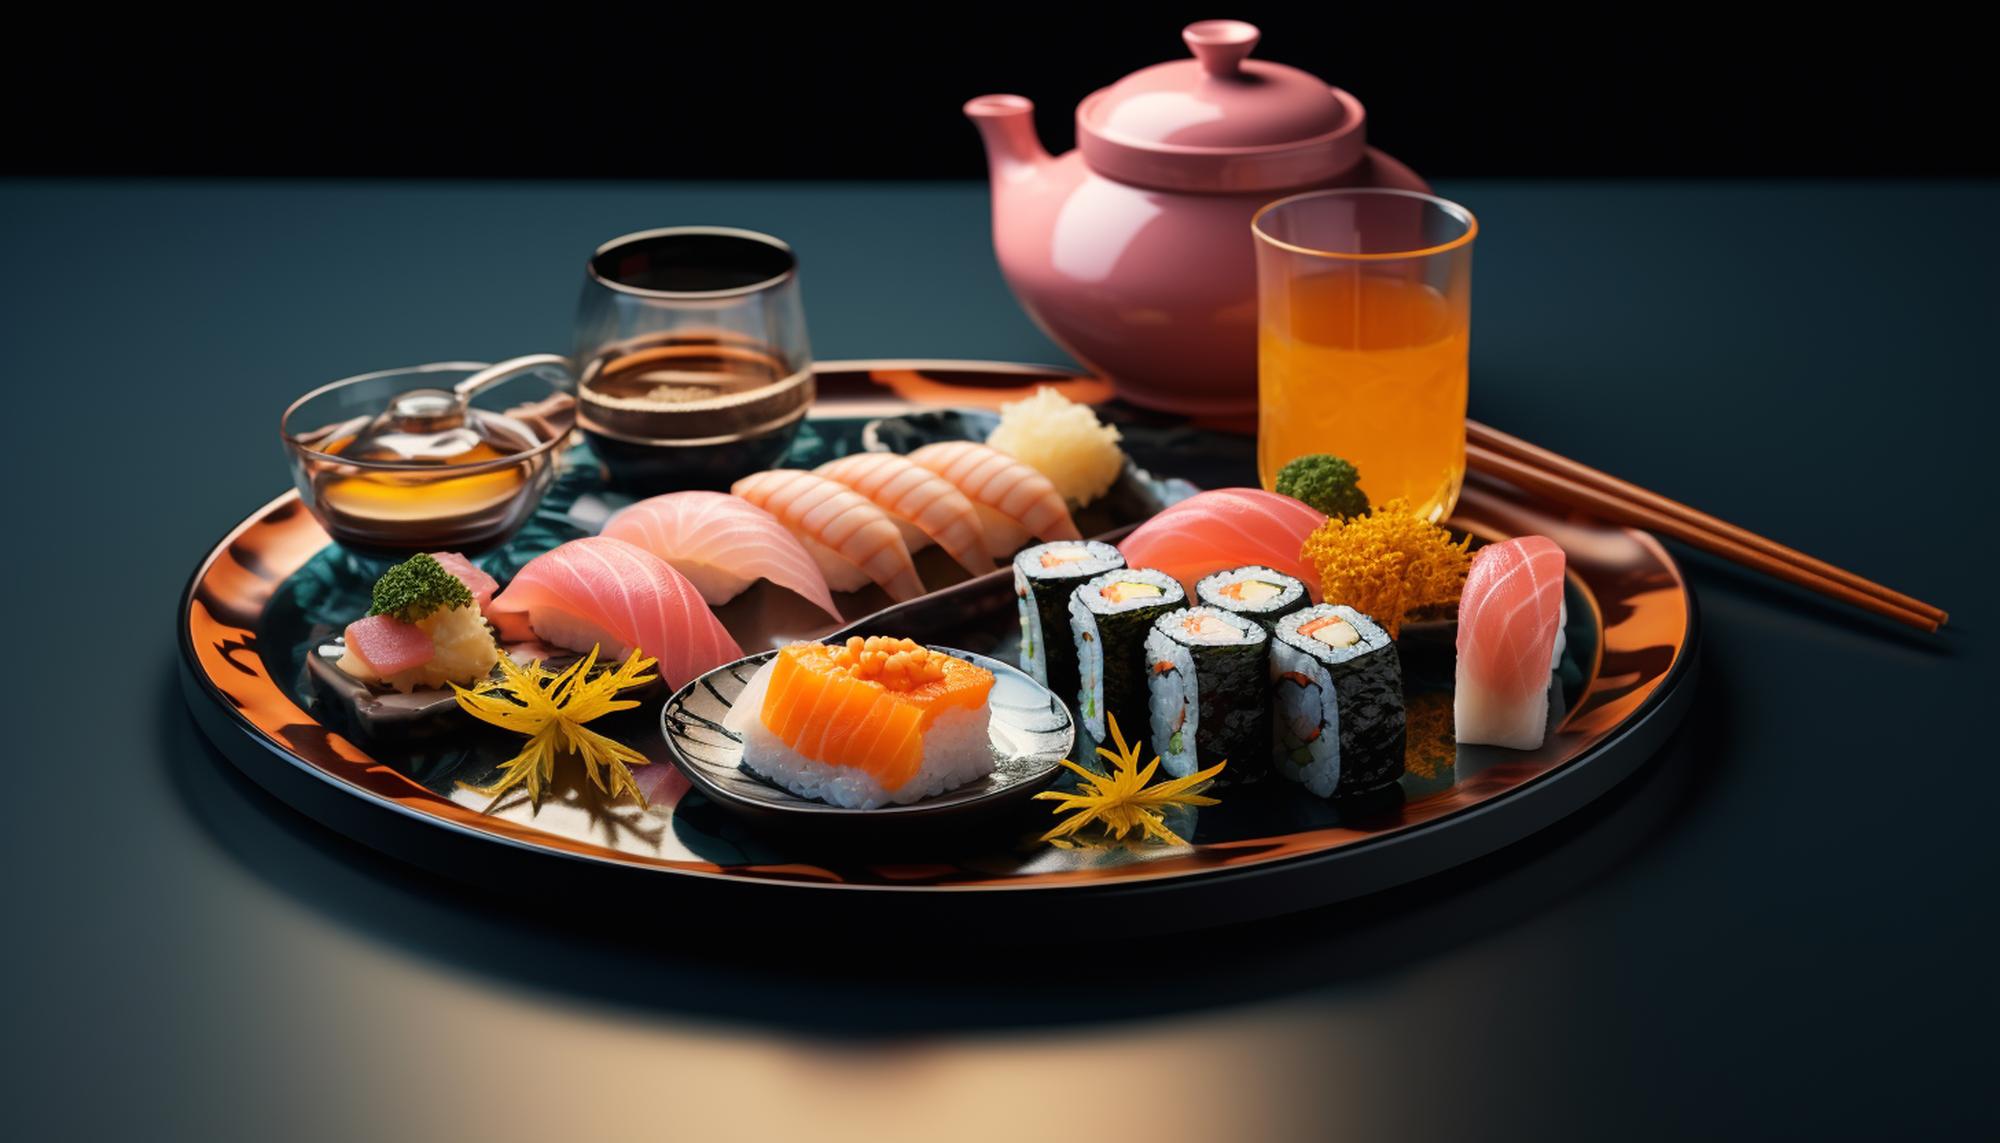 Фото суши с различными вкусами